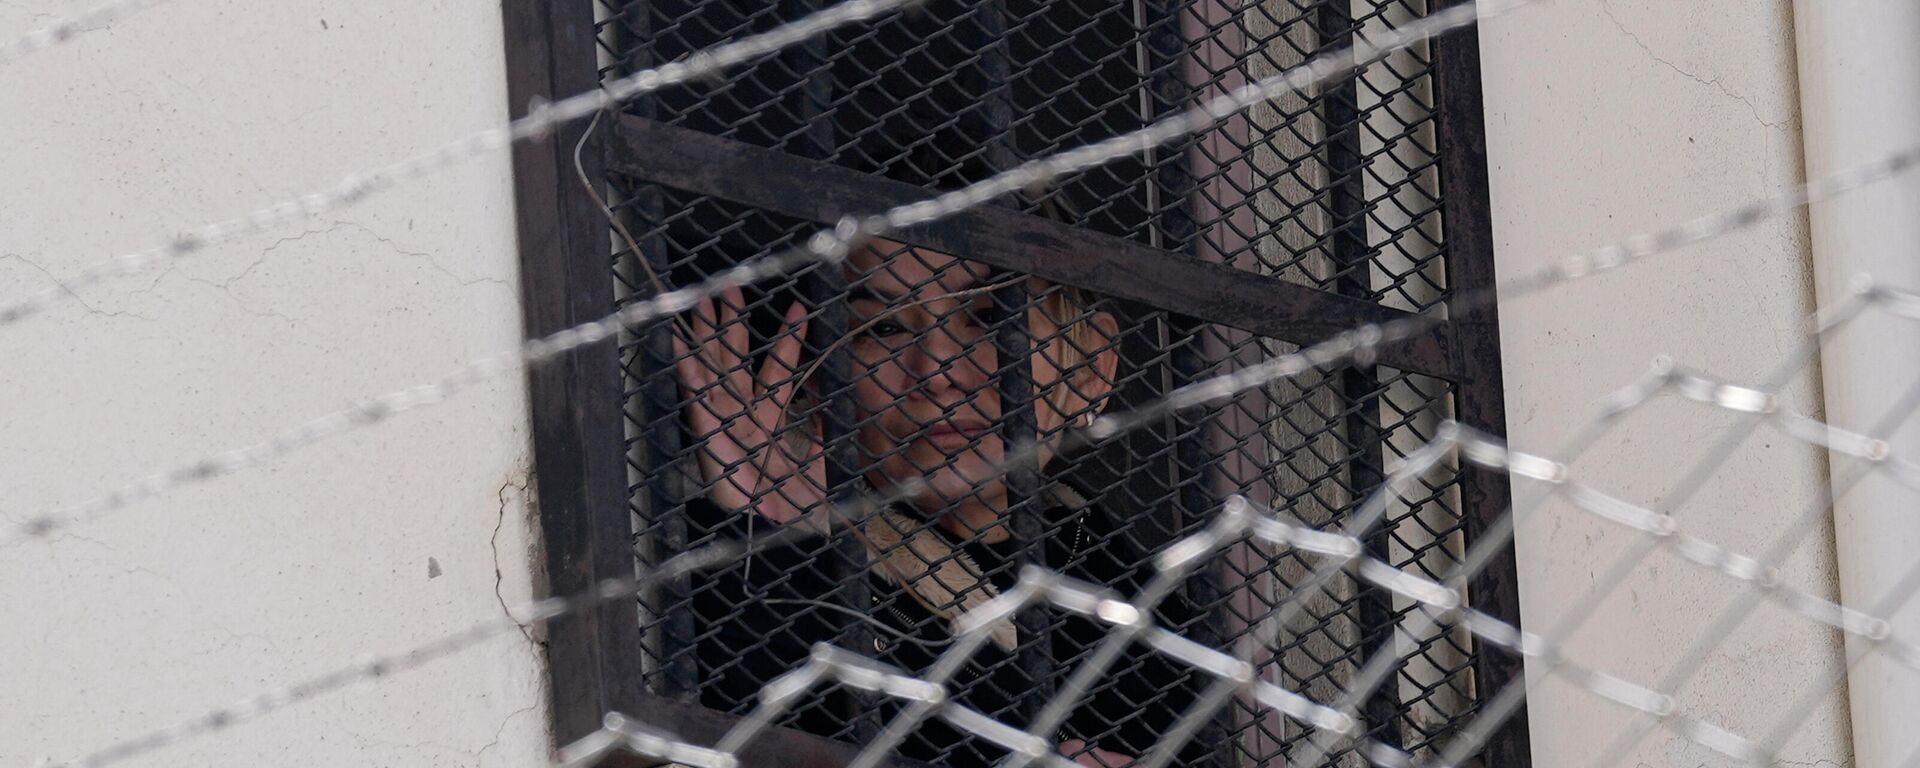 La expresidenta transitoria boliviana, Jeanine Áñez (2019-2020), en la cárcel - Sputnik Mundo, 1920, 07.04.2022